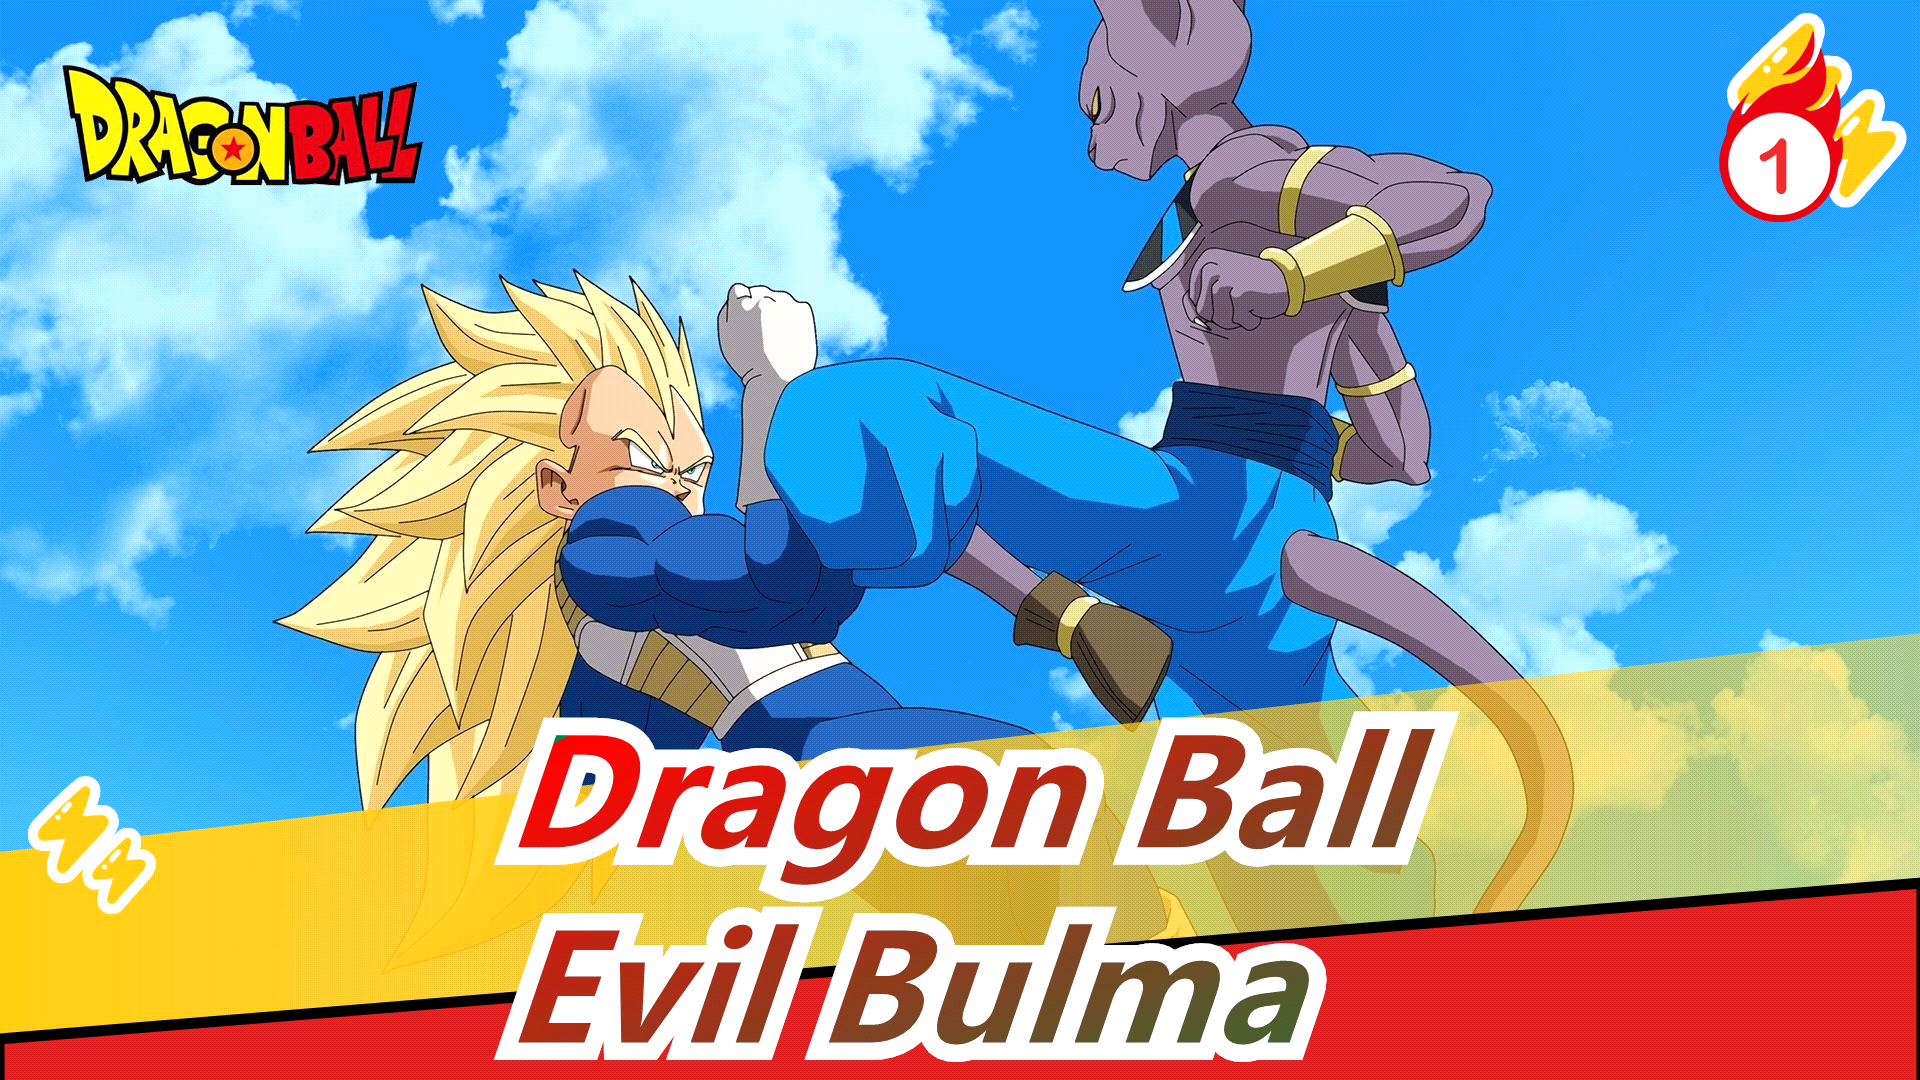 [Dragon Ball] Evil Bulma (full ver.)_1 - Bilibili